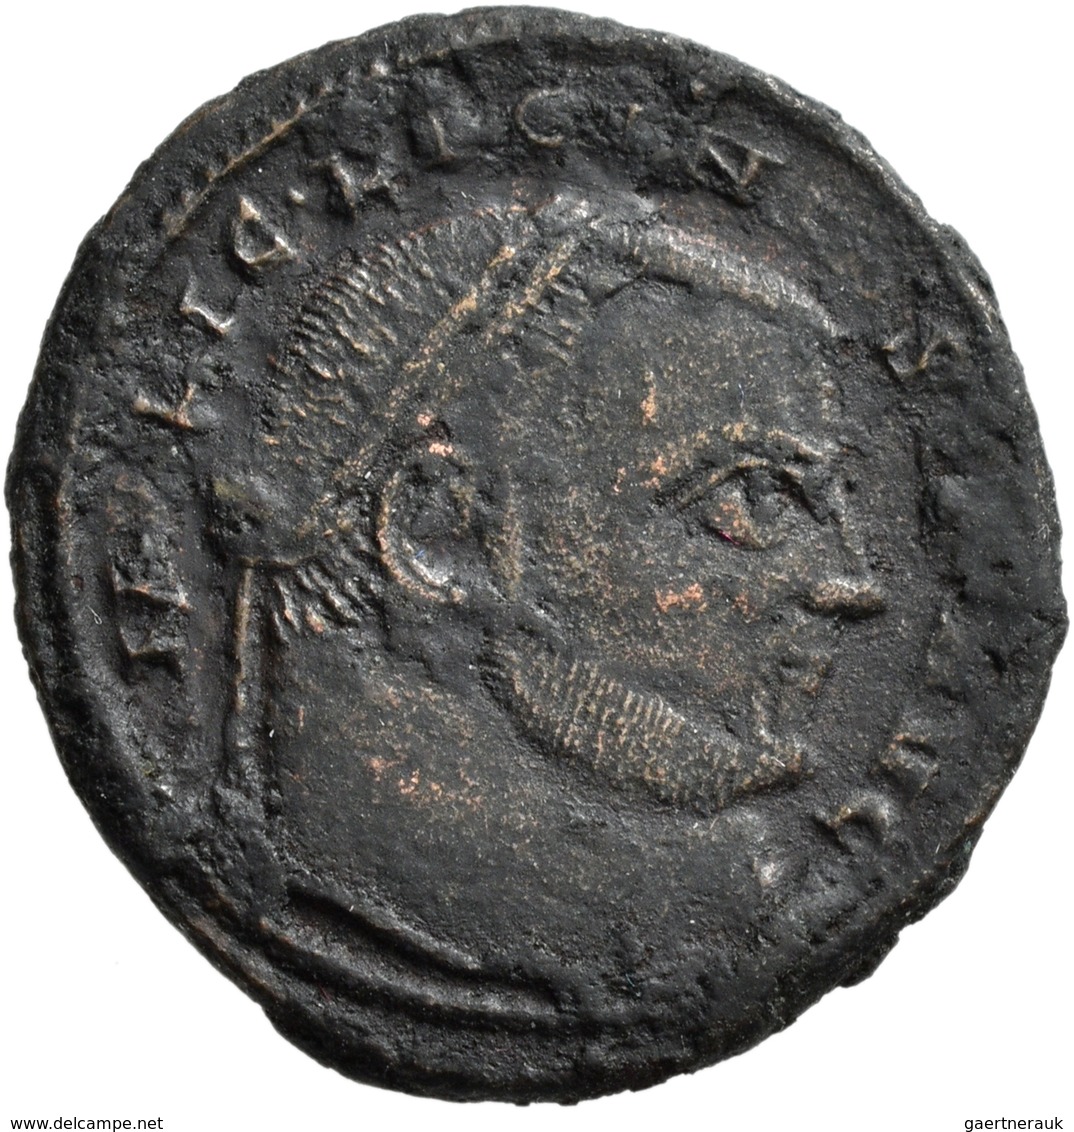 Antike: Konvolut 54 antiker, römischer Bronzemünzen aus der römischen Kaiserzeit, diverse Herrscher